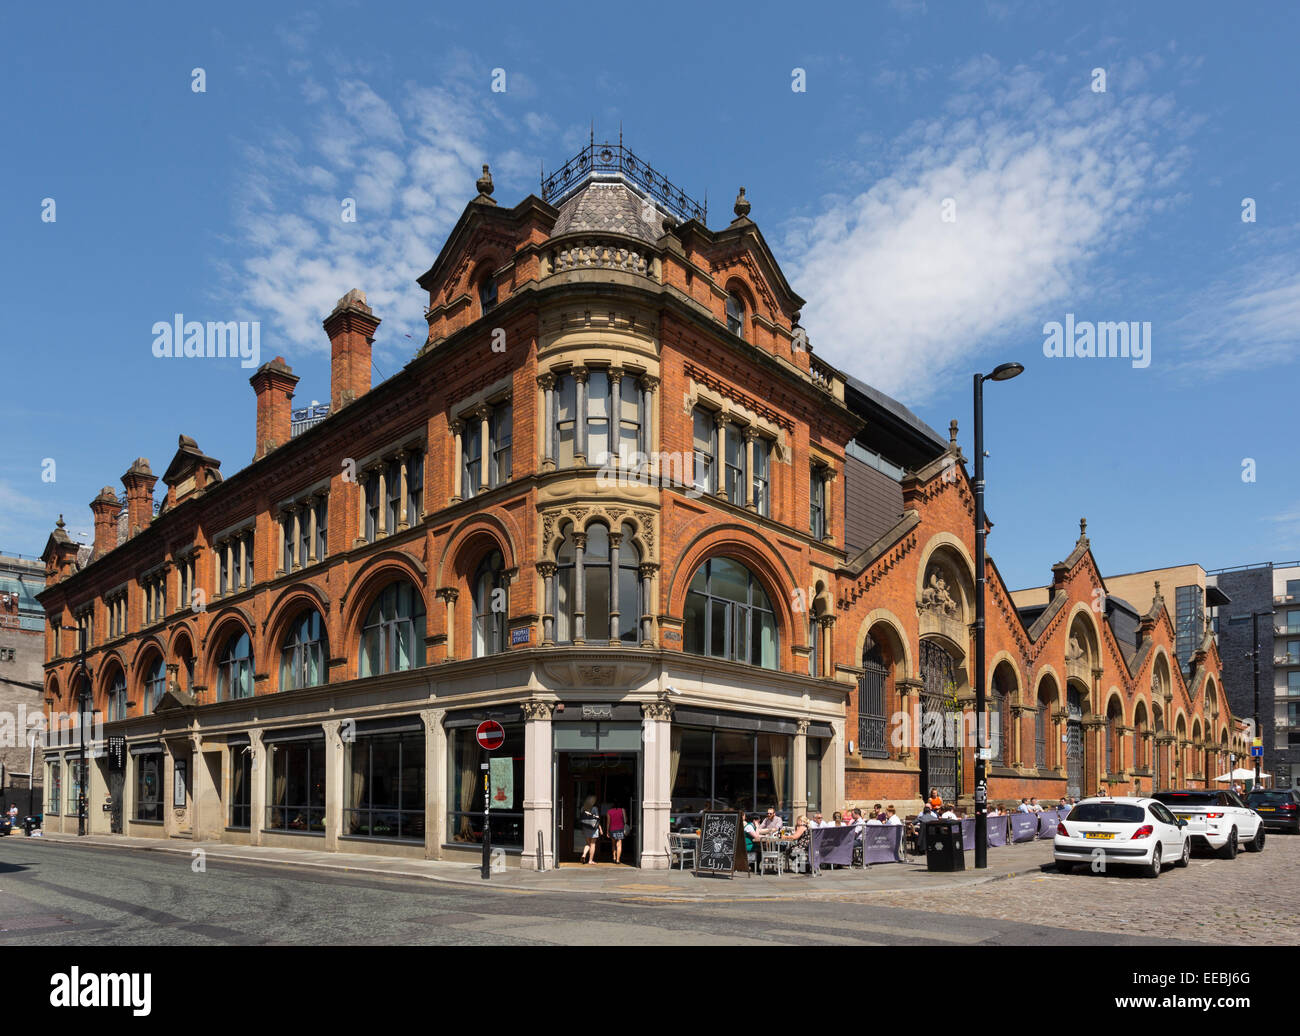 Inghilterra, Manchester, architettura vittoriana nel quartiere settentrionale Foto Stock